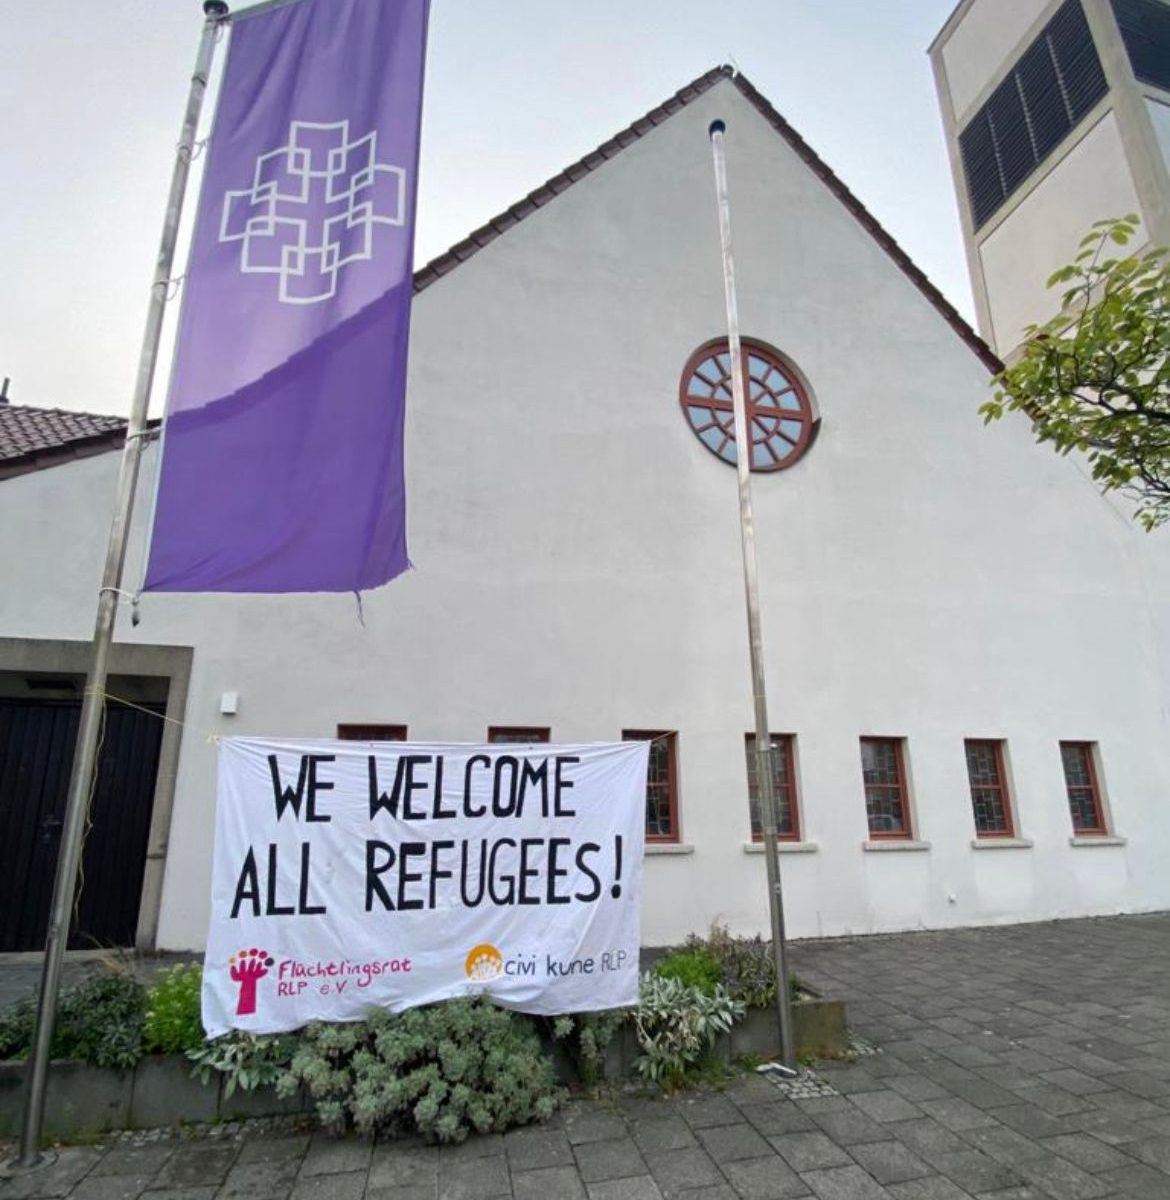 We welcome all refugees - Banner des Flüchtlingsrat RLP e.V. vor einer Kirche in Darmstadt